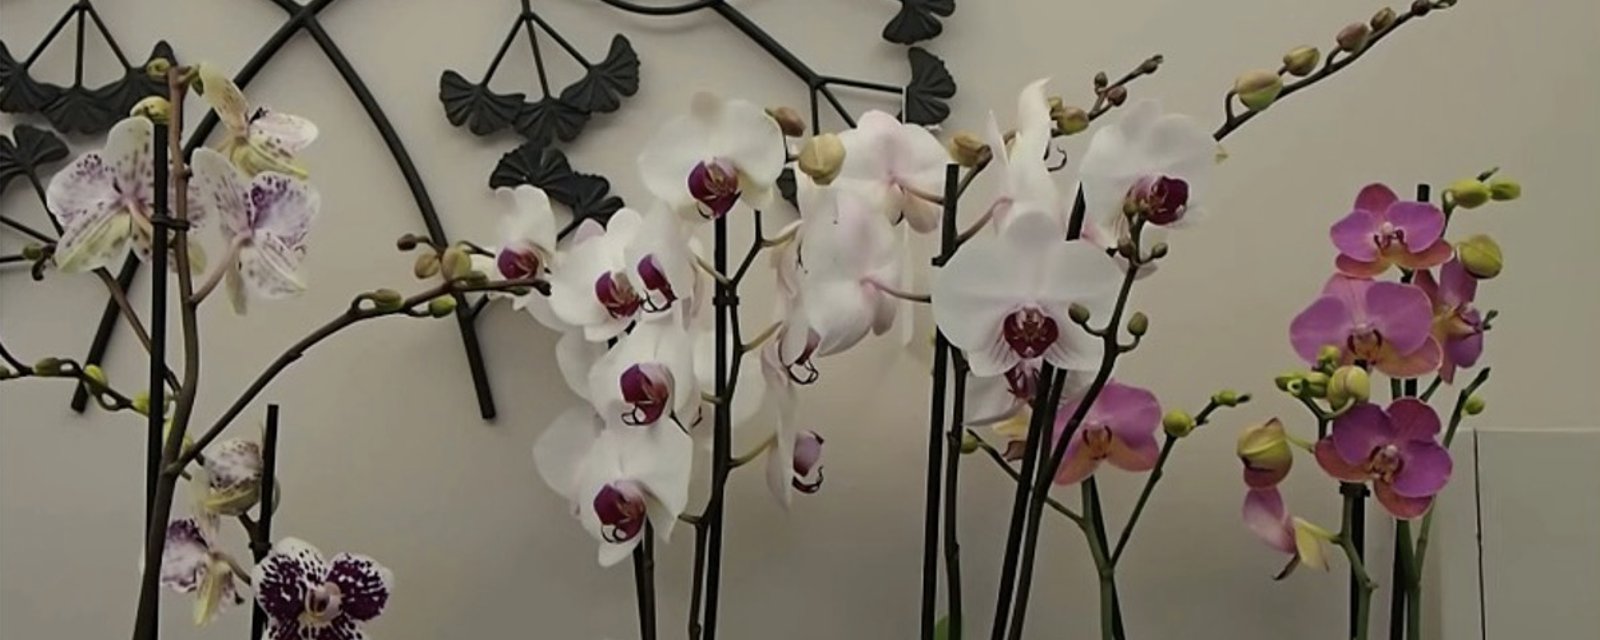 10 conseils pour faire refleurir une orchidée 